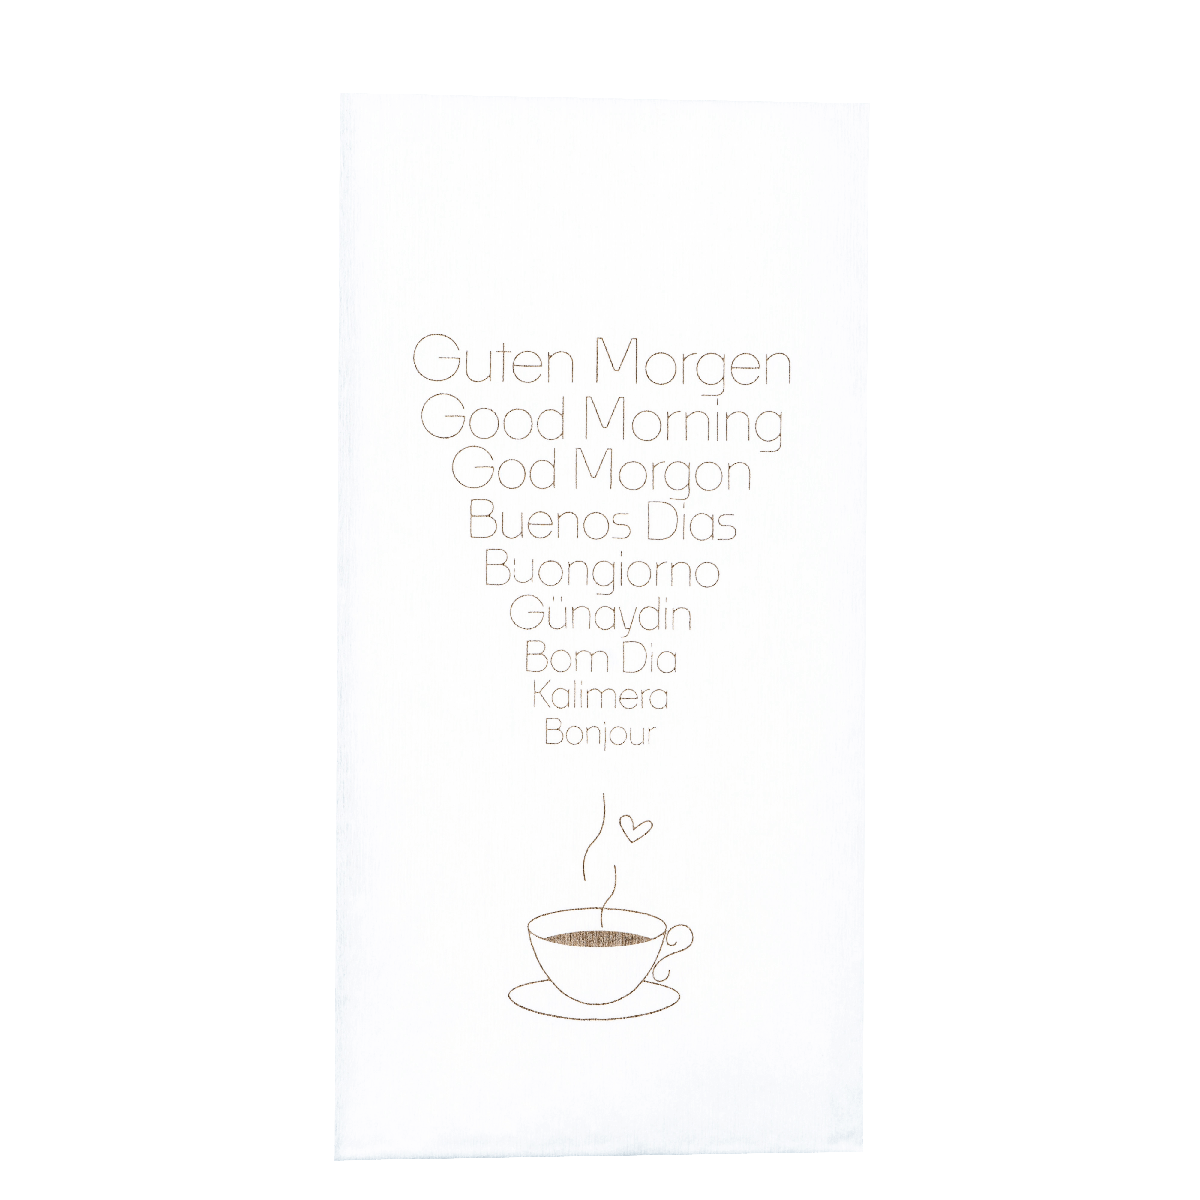 stoffähnliche Spunlace Serviette 30x40 cm , 1/6 Falz mit Motiv: "GUTEN MORGEN" in vielen Sprachen 